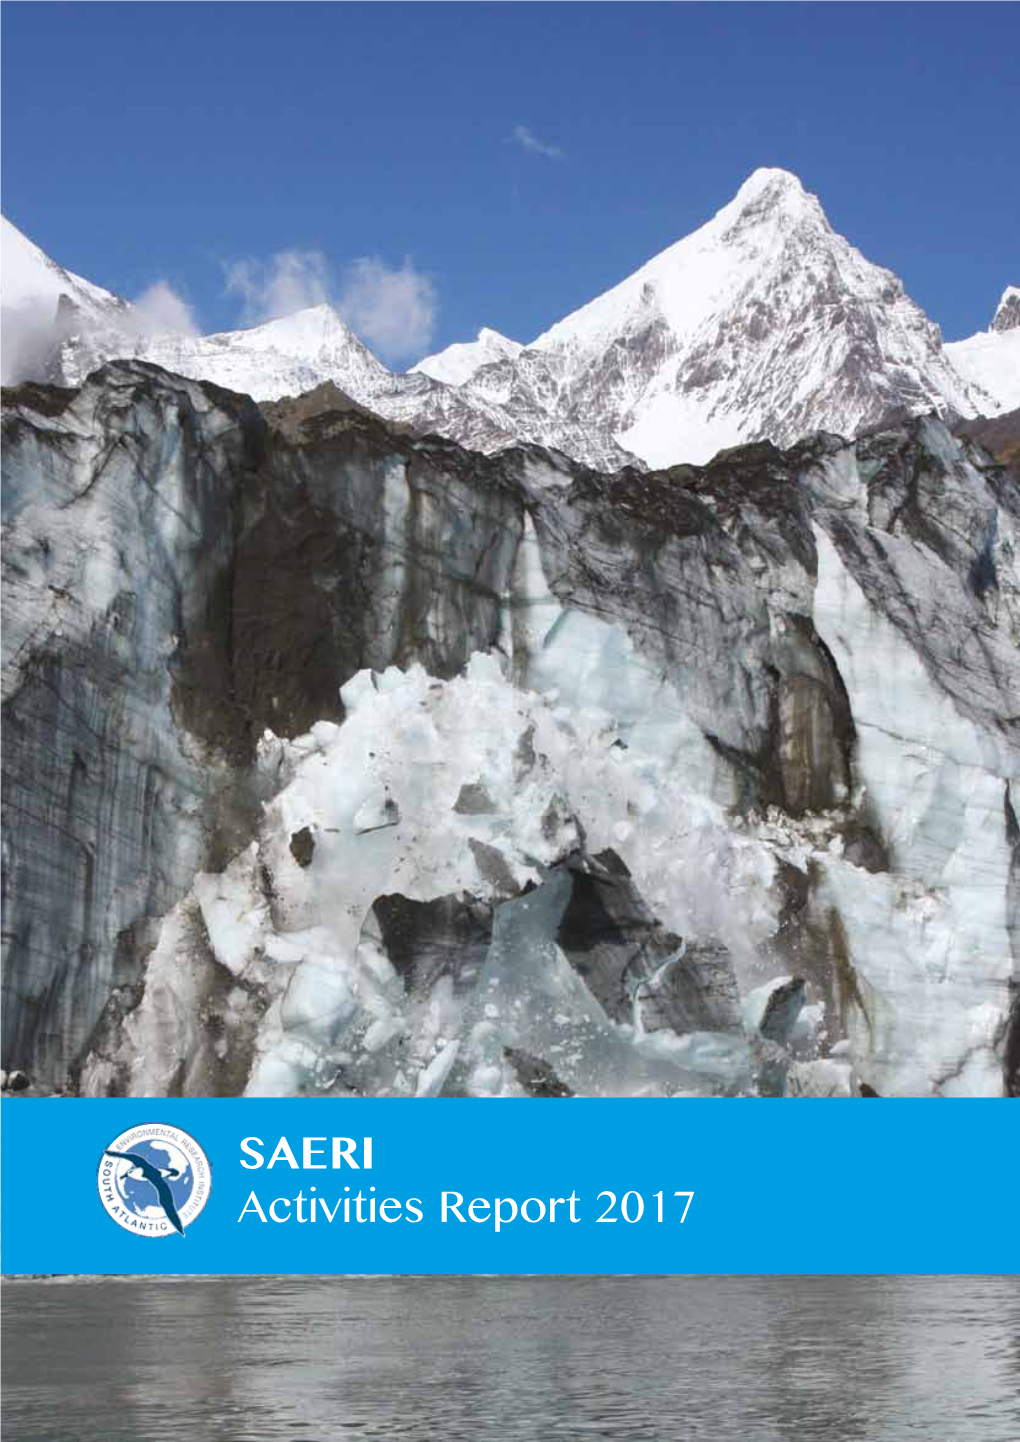 SAERI Activities Report 2017 Contents